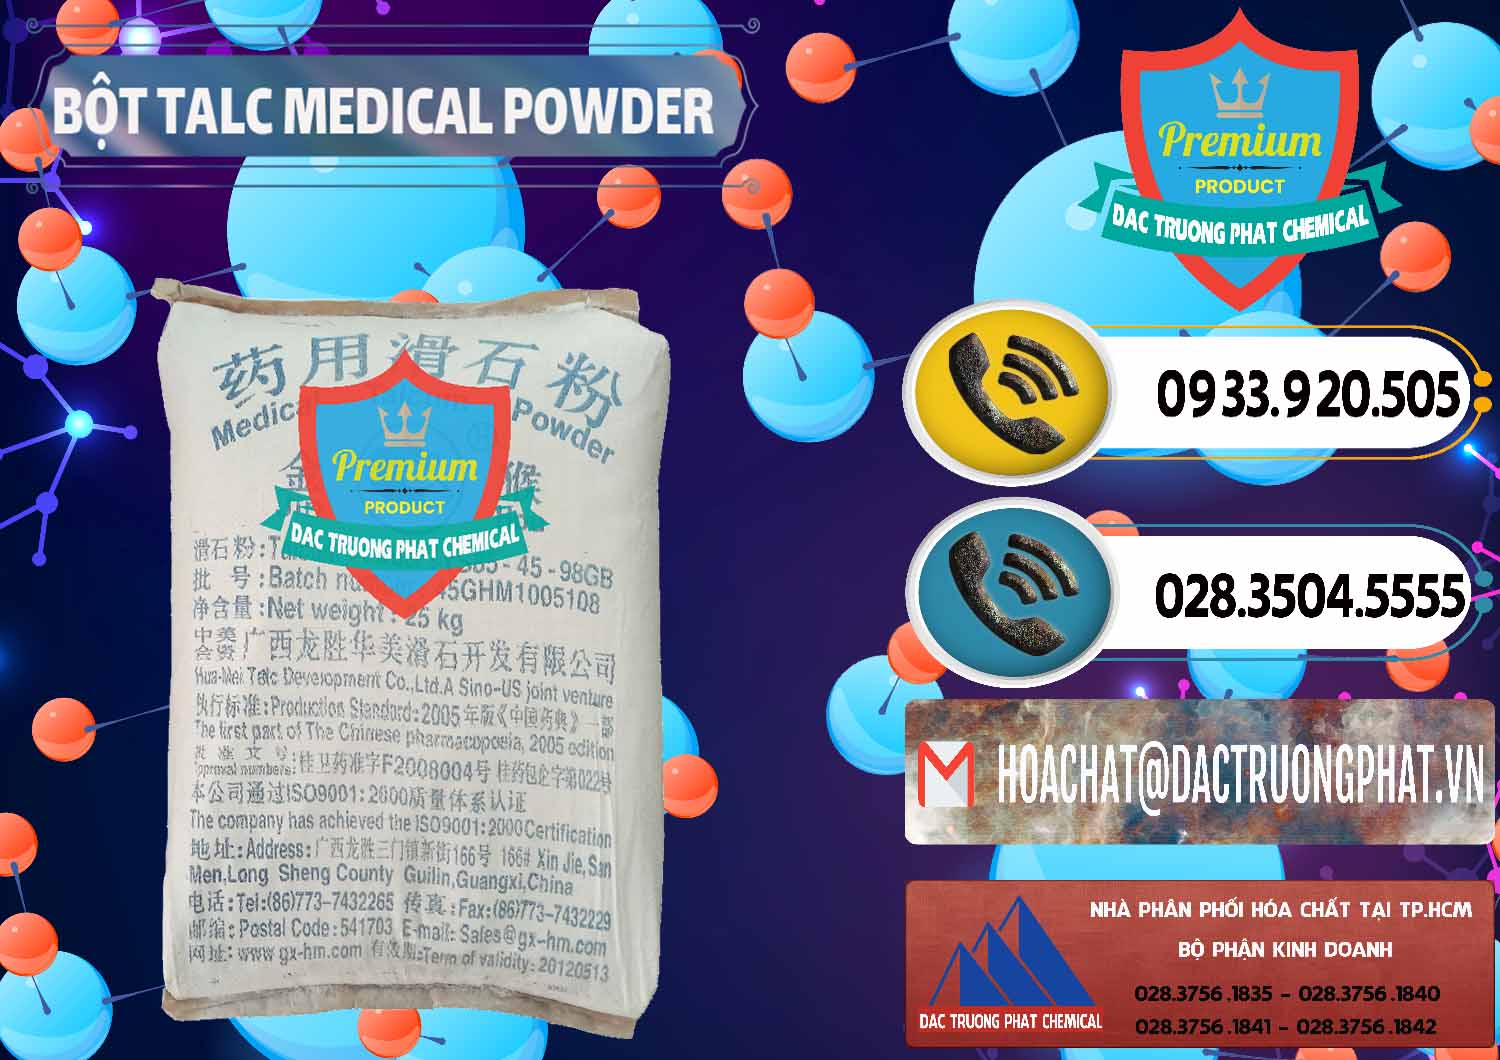 Cty kinh doanh ( bán ) Bột Talc Medical Powder Trung Quốc China - 0036 - Nơi chuyên phân phối ( kinh doanh ) hóa chất tại TP.HCM - hoachatdetnhuom.vn